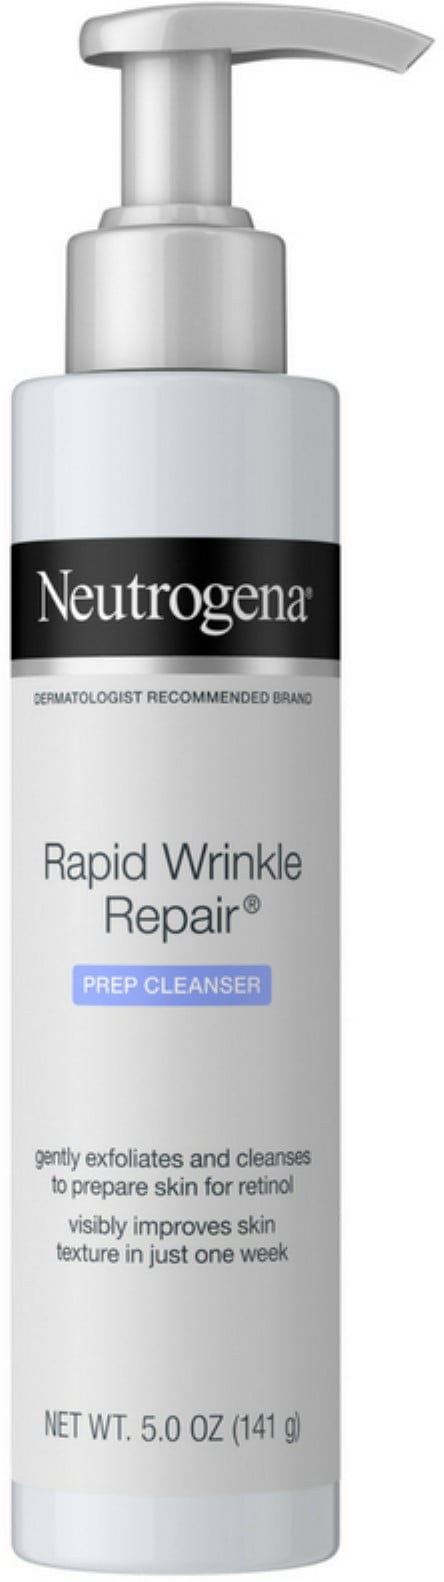 neutrogena anti aging face wash)